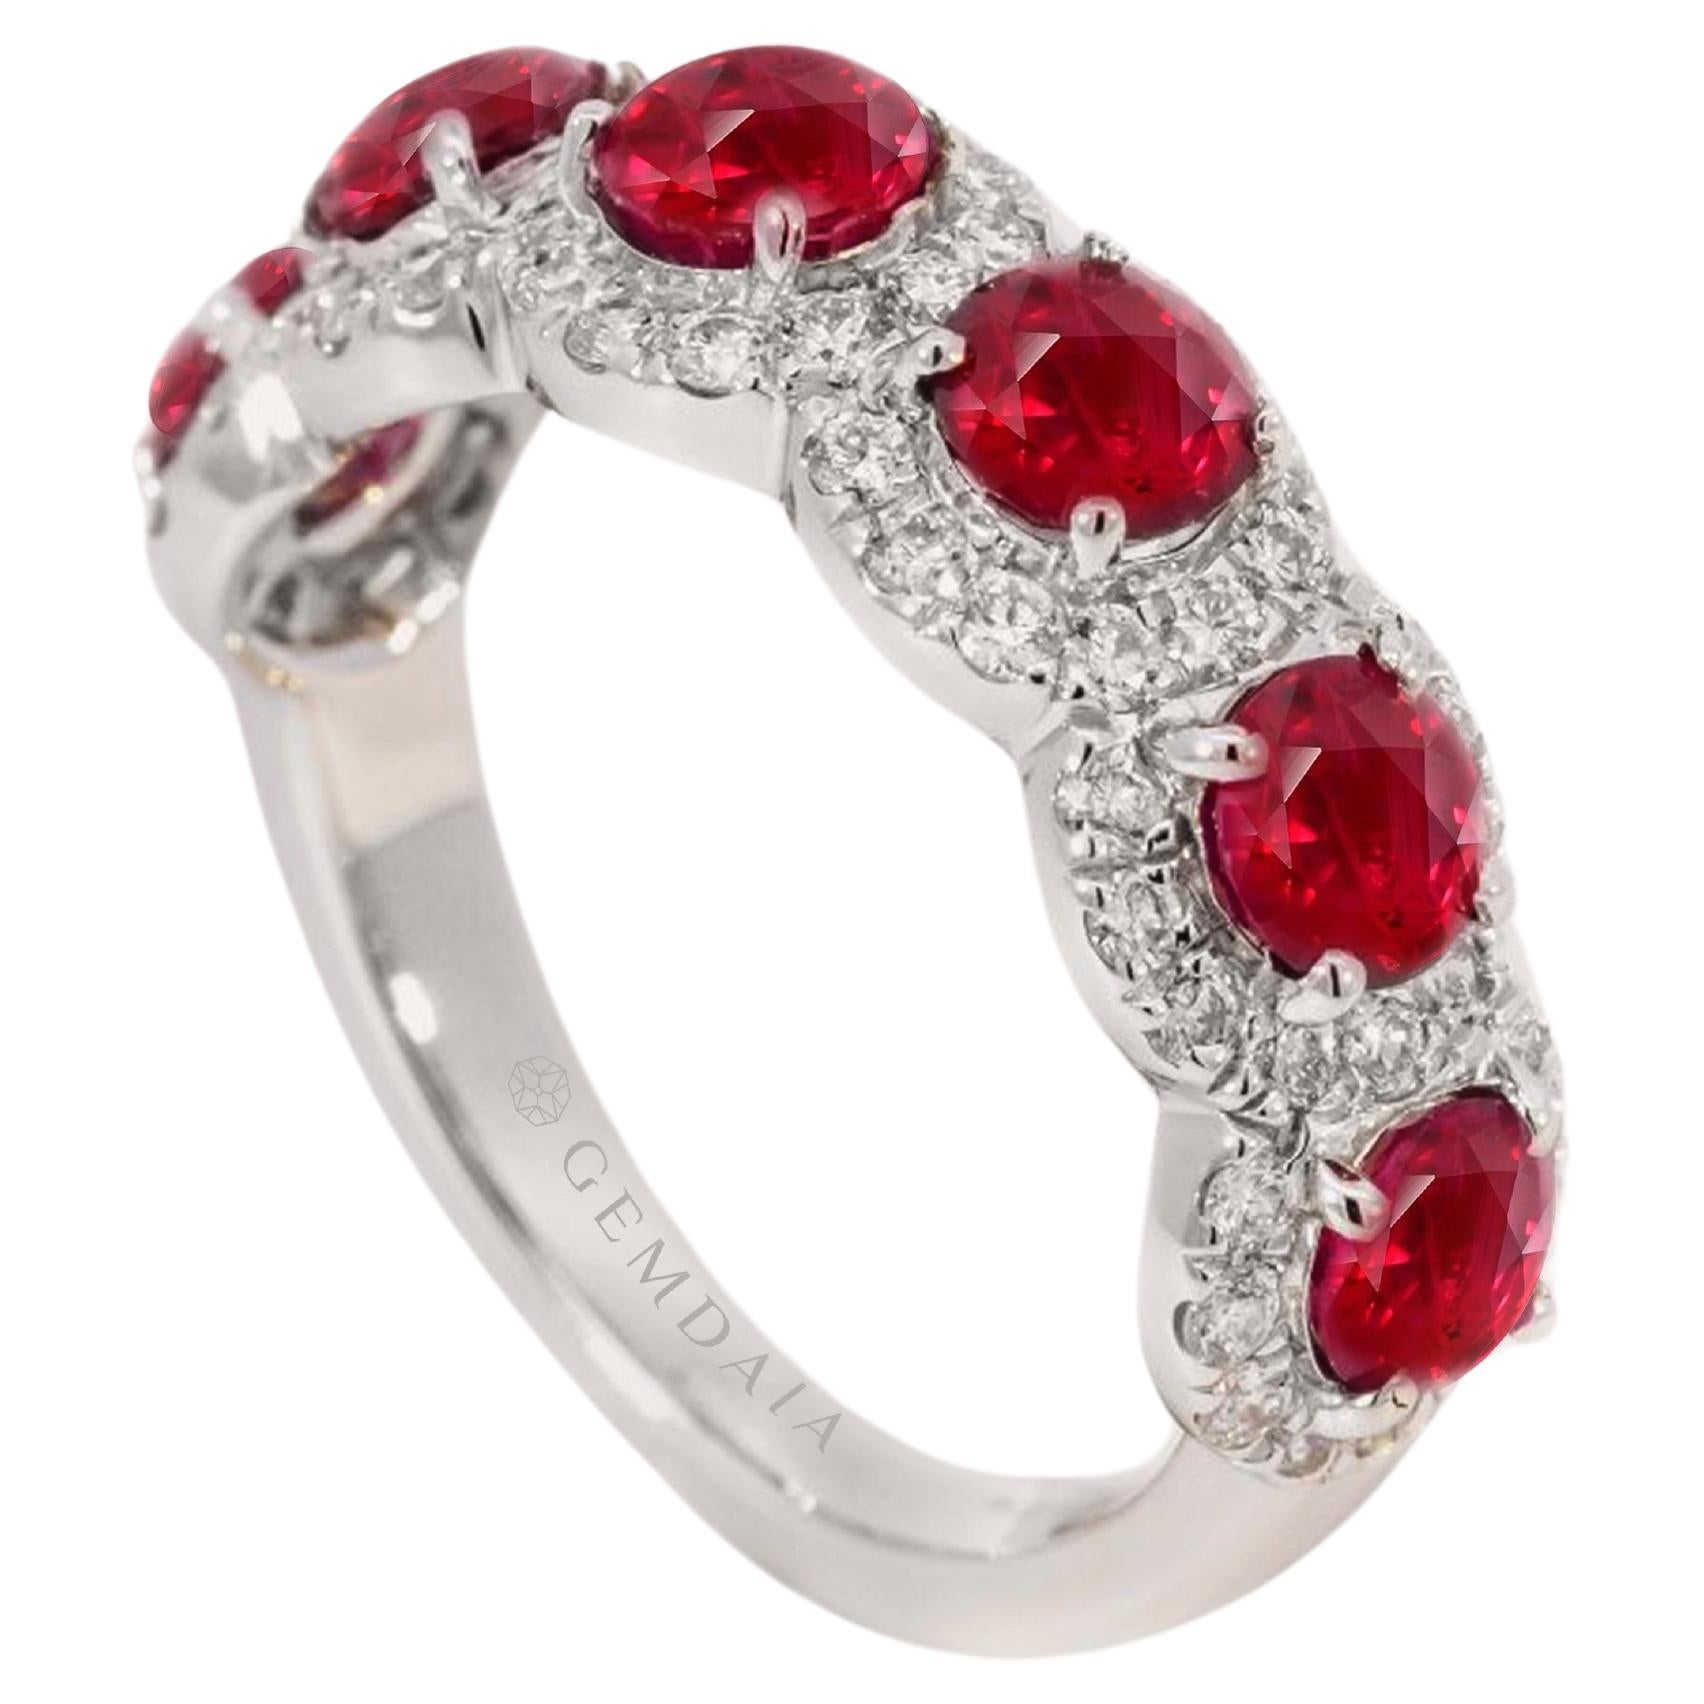 Zertifizierter Multi-Stein-Ring mit natürlichem Rubin und Diamanten - Taubenblutrot  Rubine